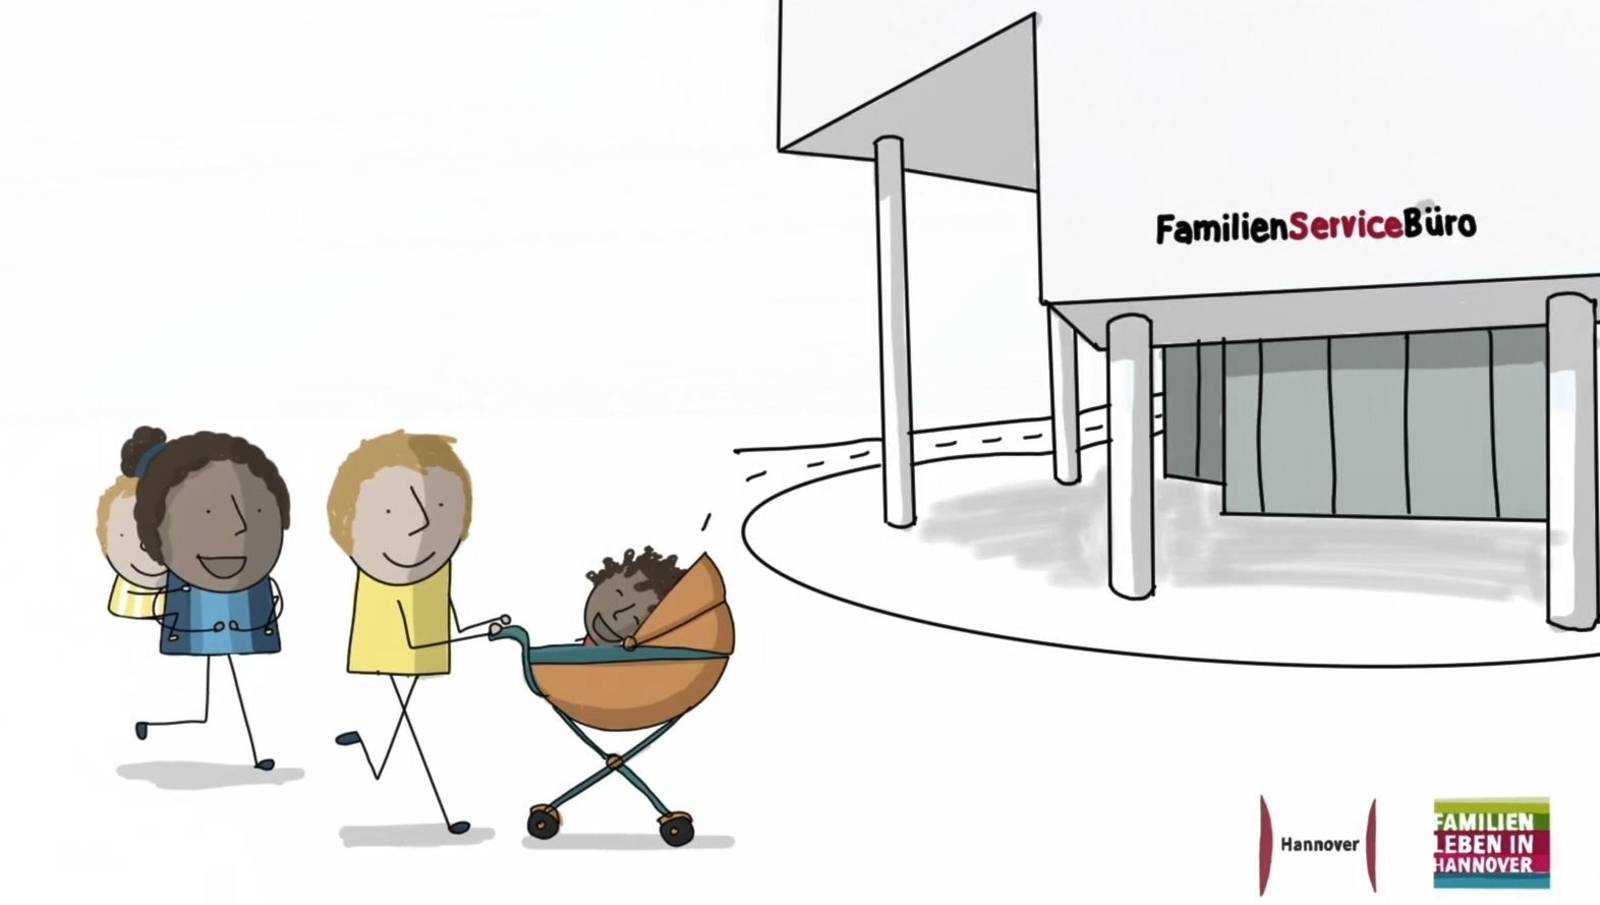 Zeichnung einer Familie mit zwei Kindern auf dem Weg zum FamilienServiceBüro.